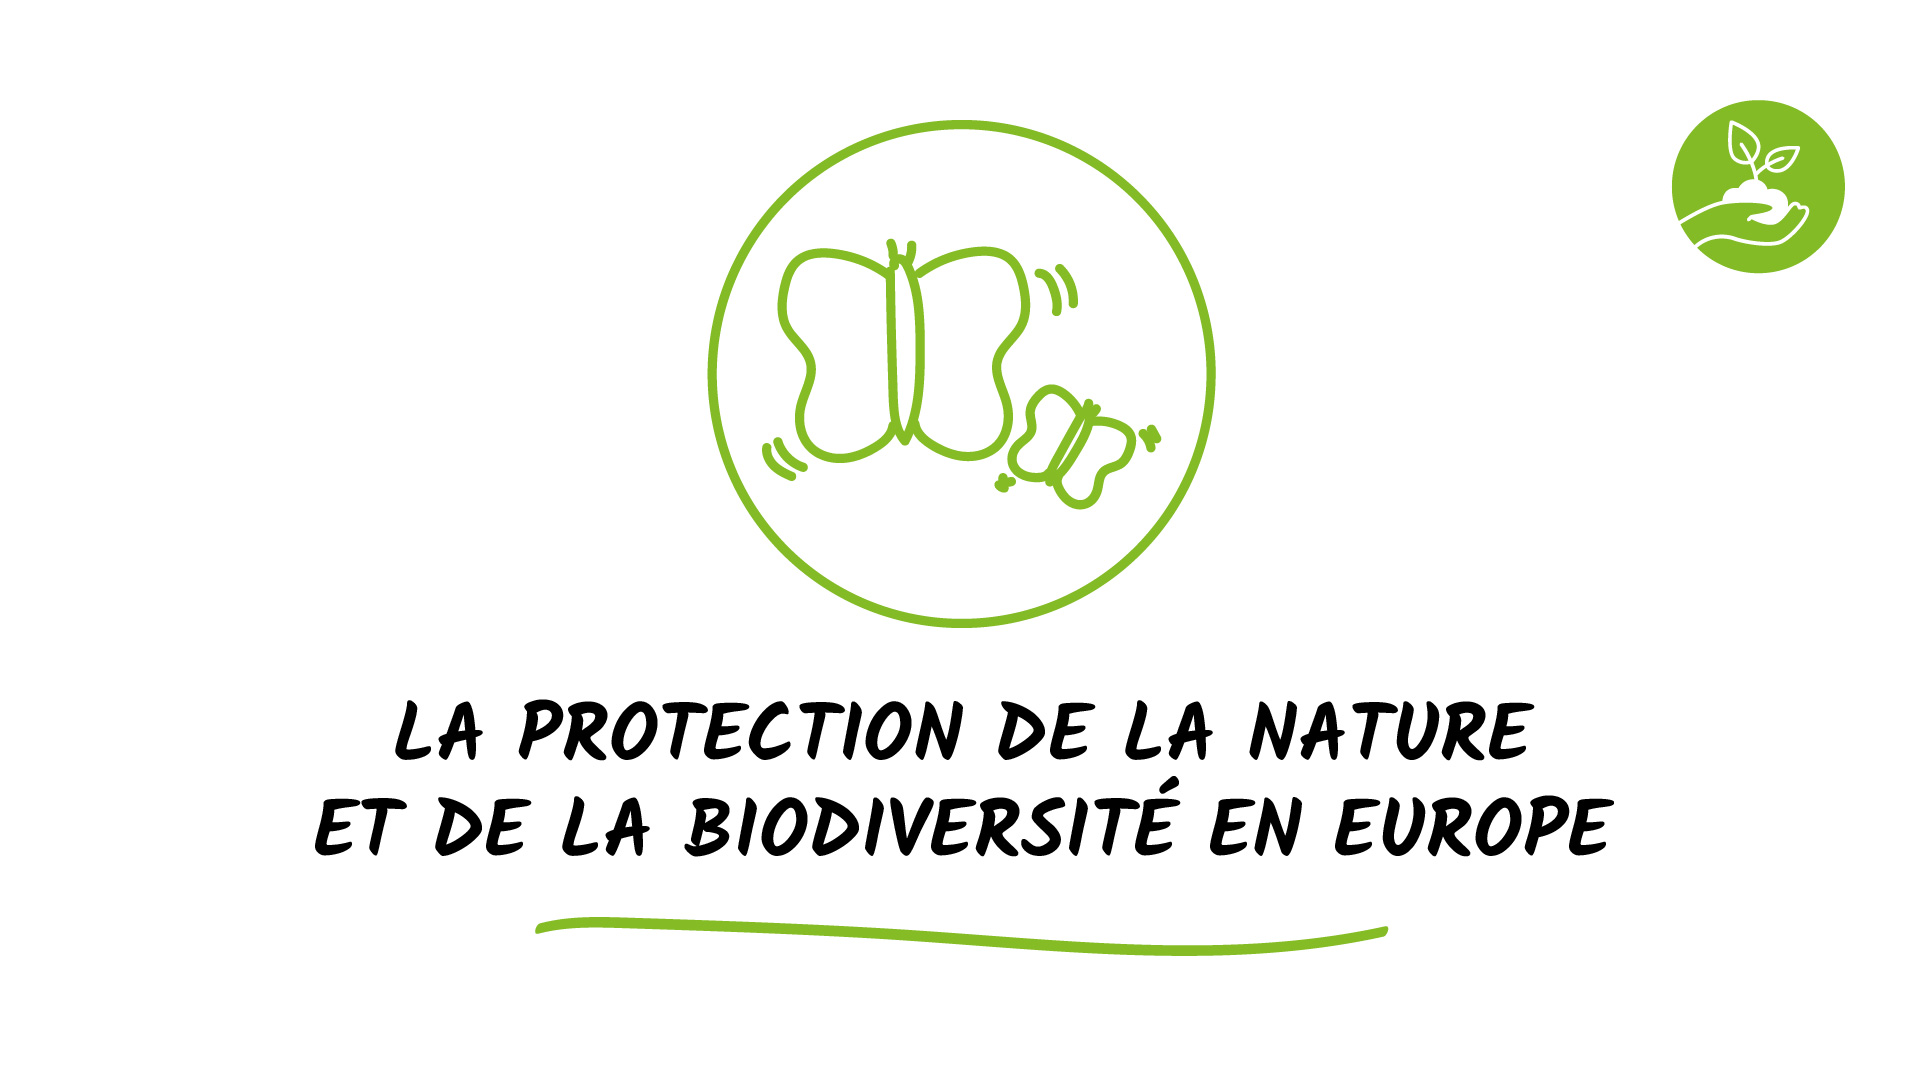 La protection de la nature et de la biodiversité en Europe